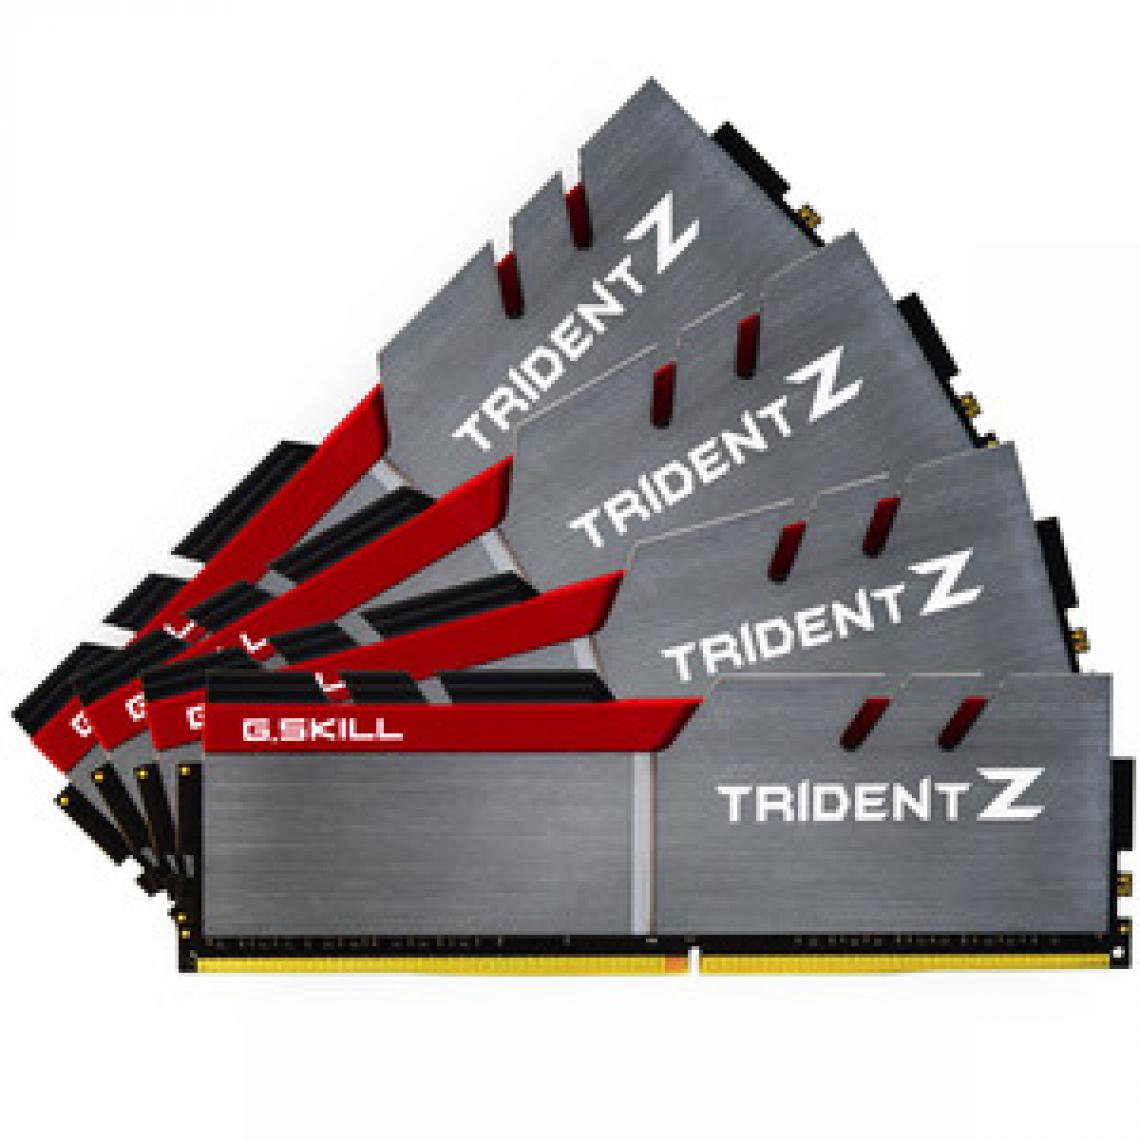 Gskill - Trident Z 32 Go (4x8 Go) DDR4 3200 MHz CL14 - RAM PC Fixe